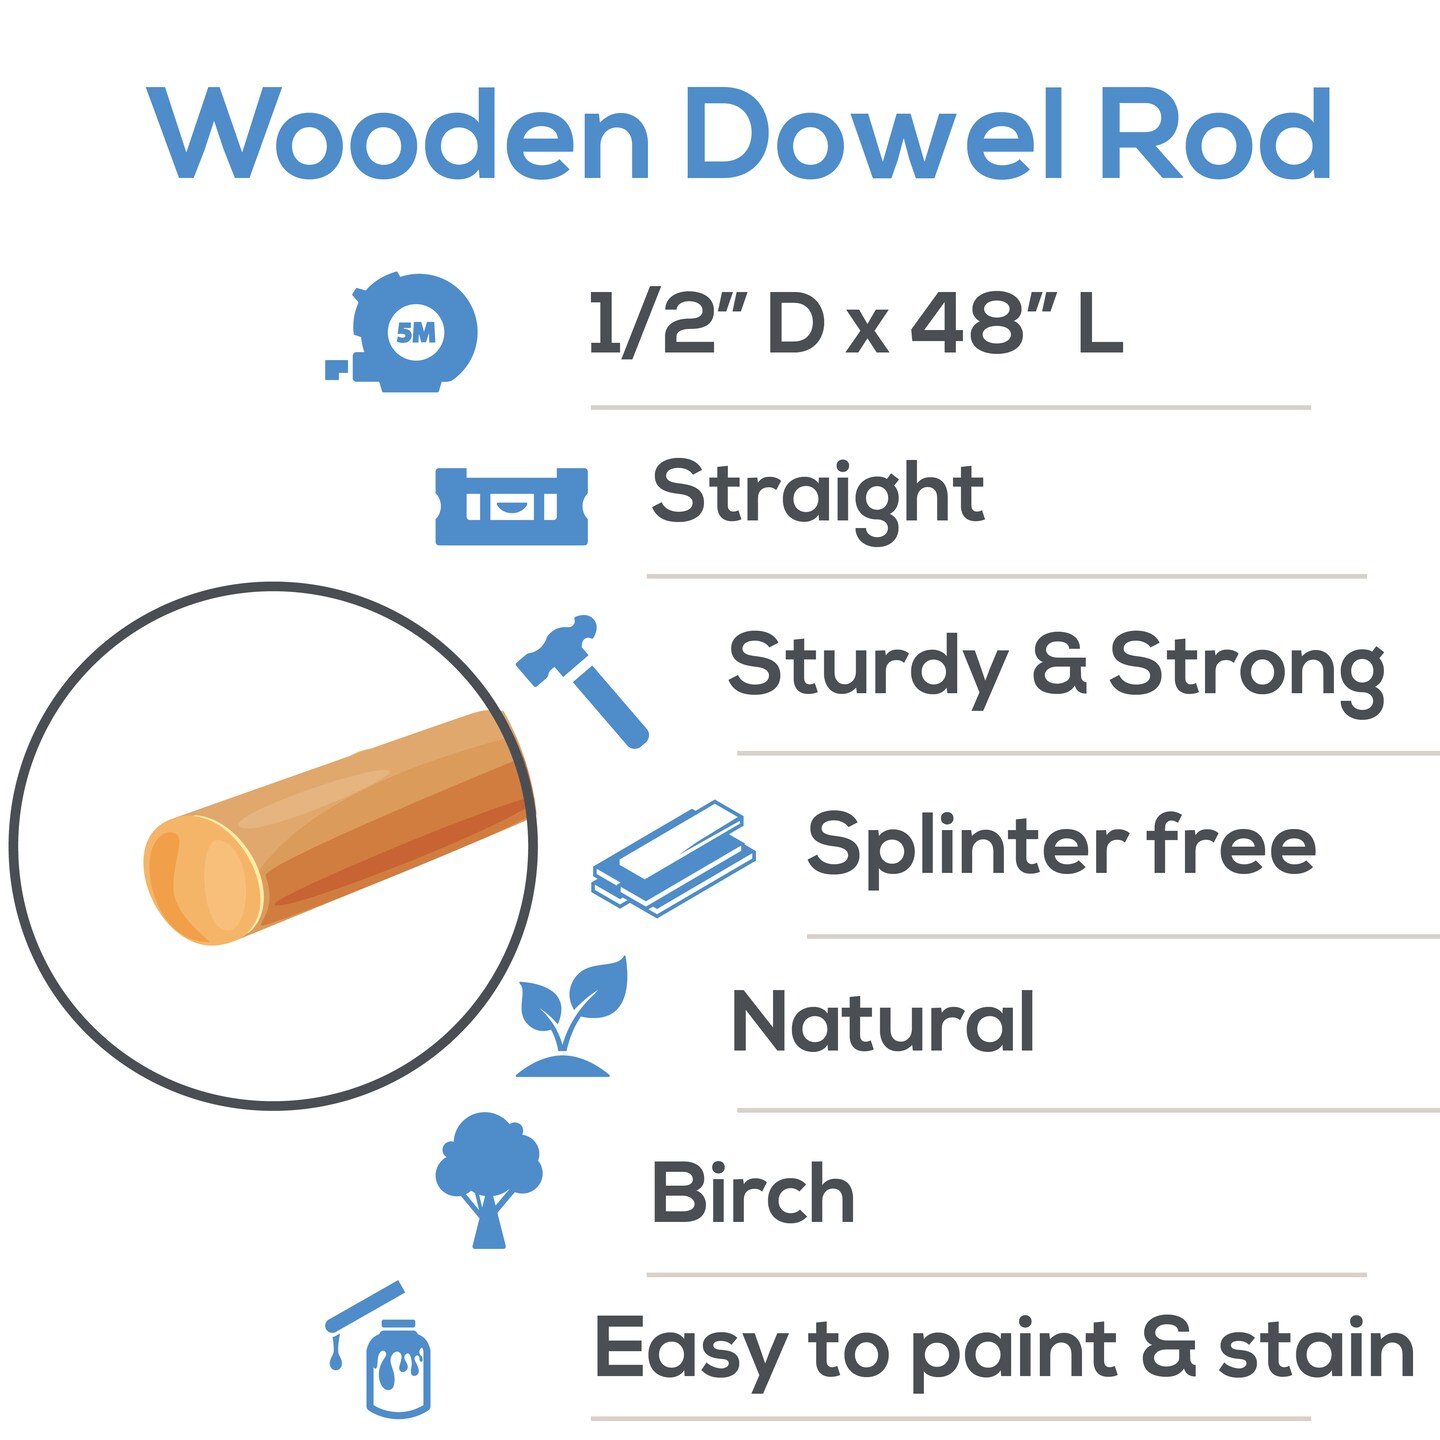 Wood & Dowels